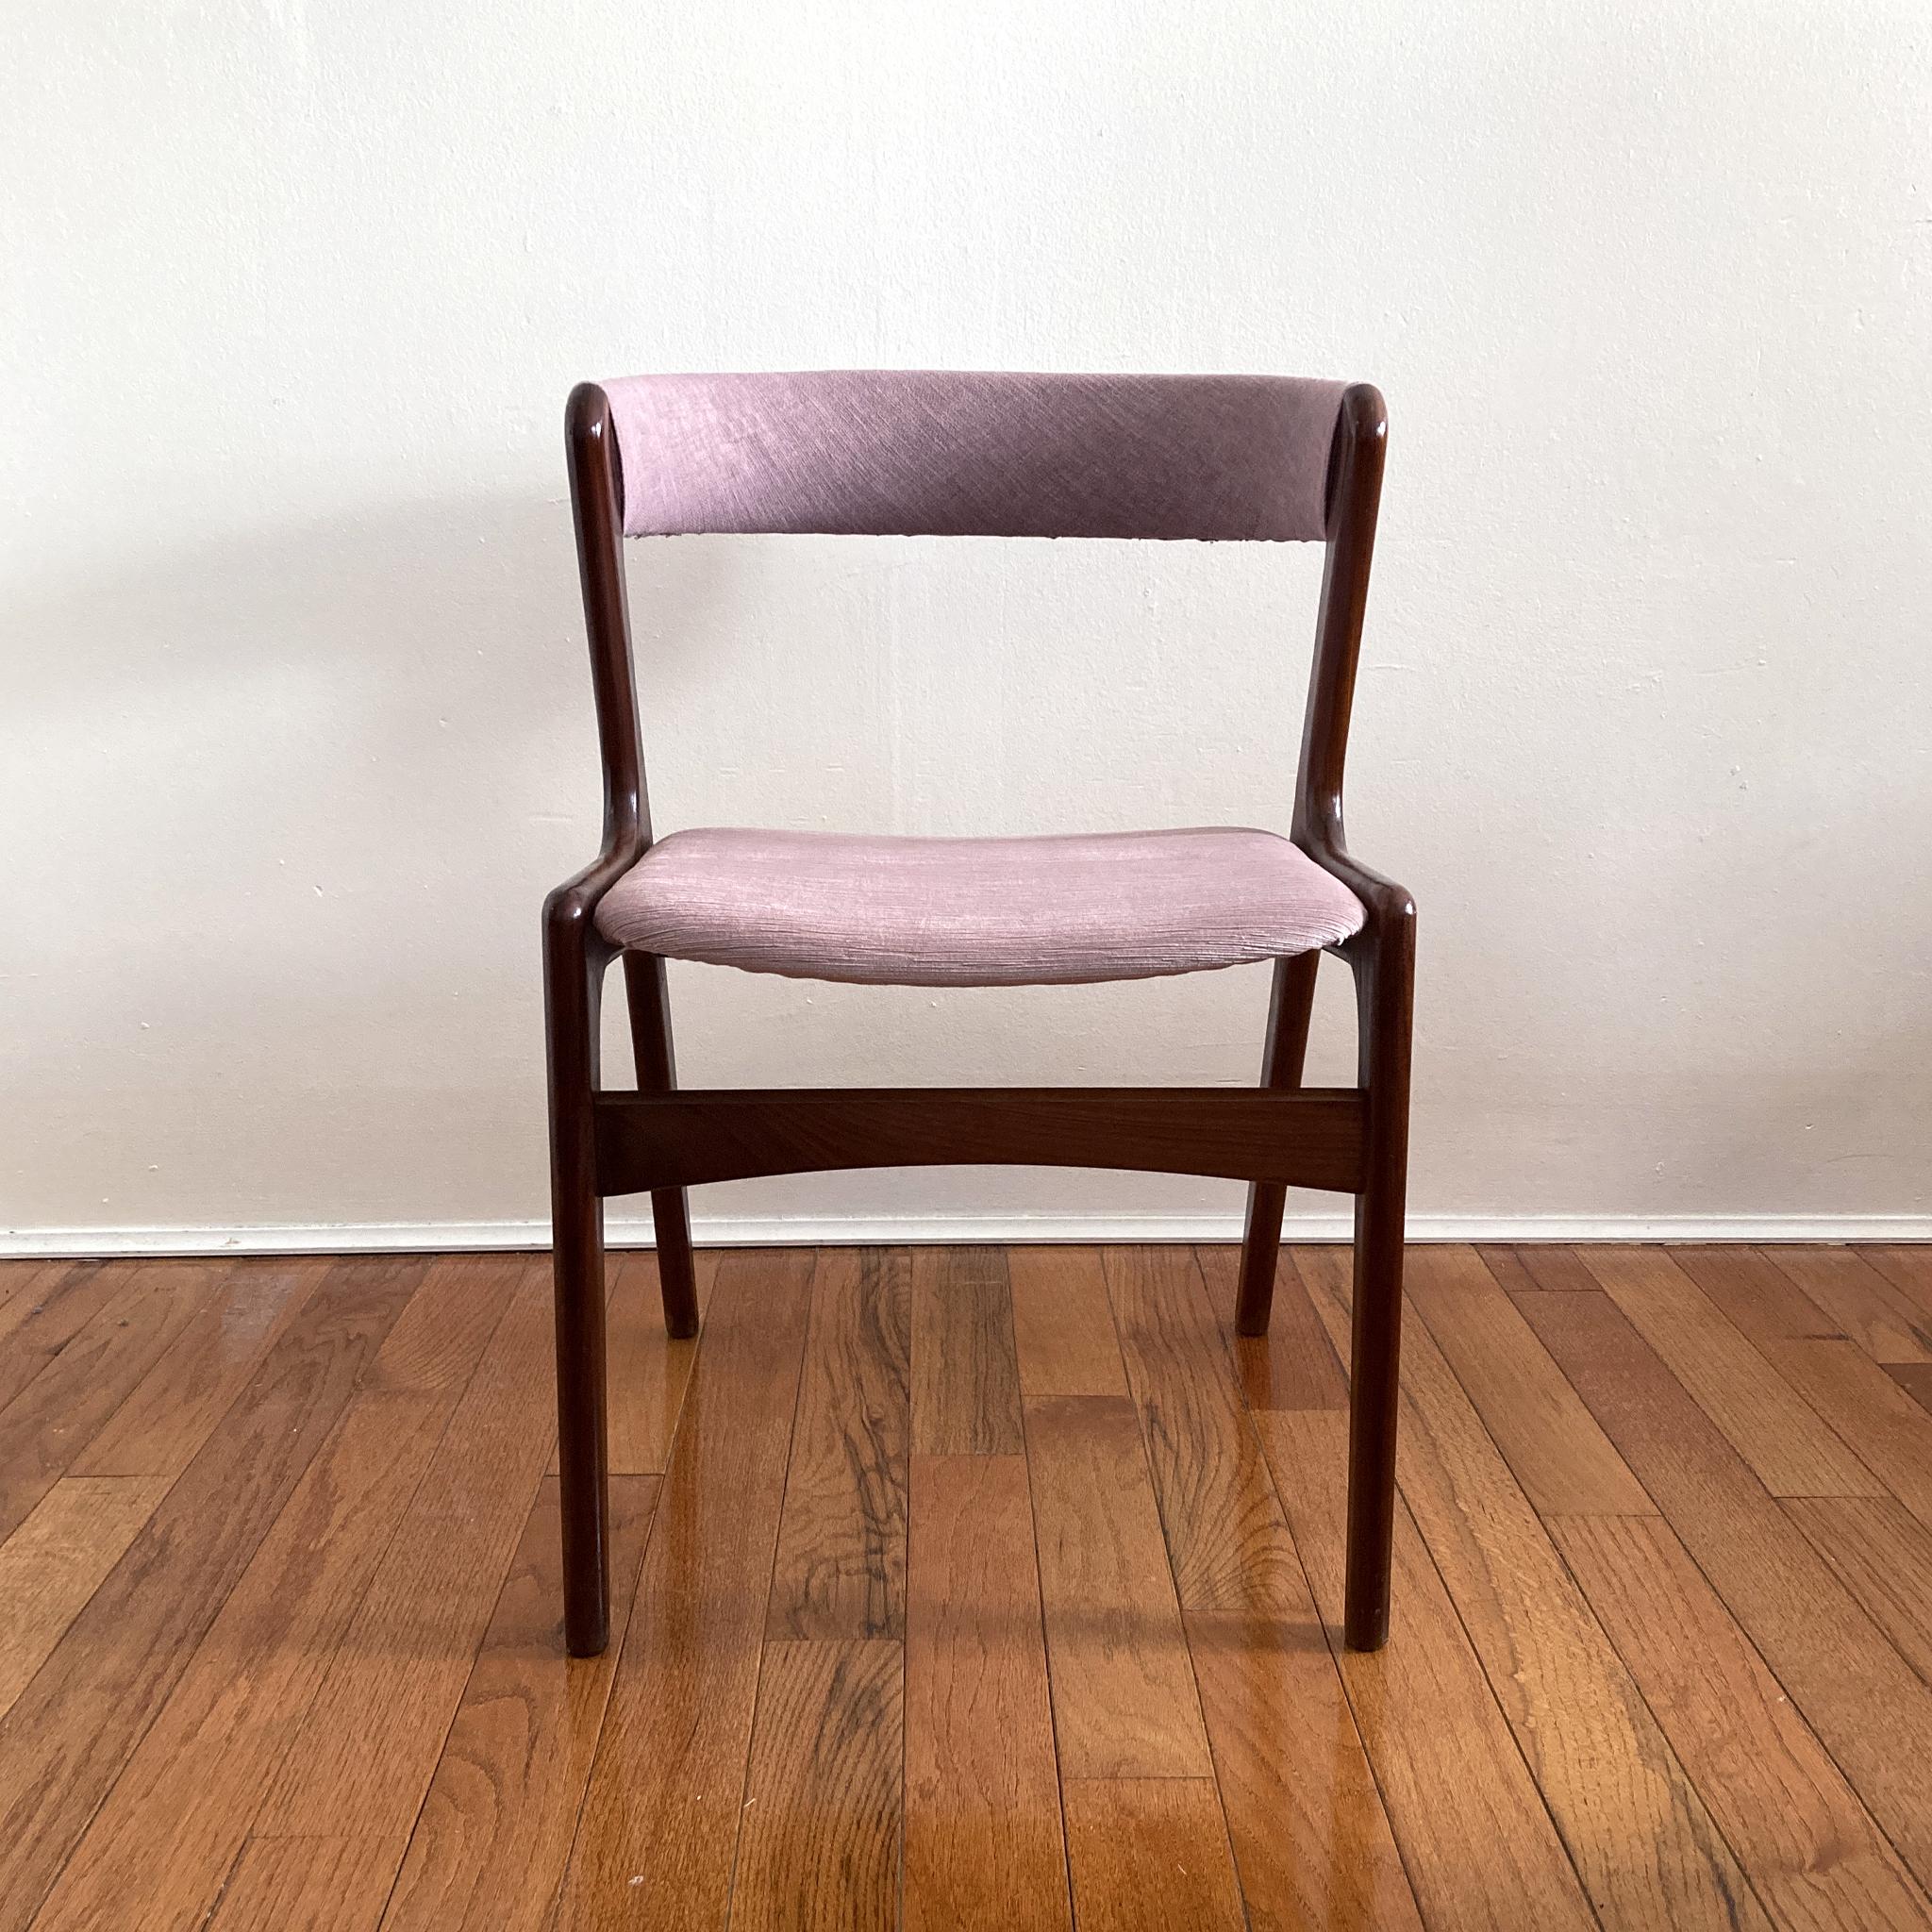 Schöner Stuhl aus der Mitte des Jahrhunderts, Kai Kristiansens ikonische Silhouette eines Stuhls mit gebogener Rückenlehne. Gestell aus Teakholz, Sitzfläche neu gepolstert mit mauvefarbenem Samt und geschwungene Rückenlehne neu gepolstert mit einem